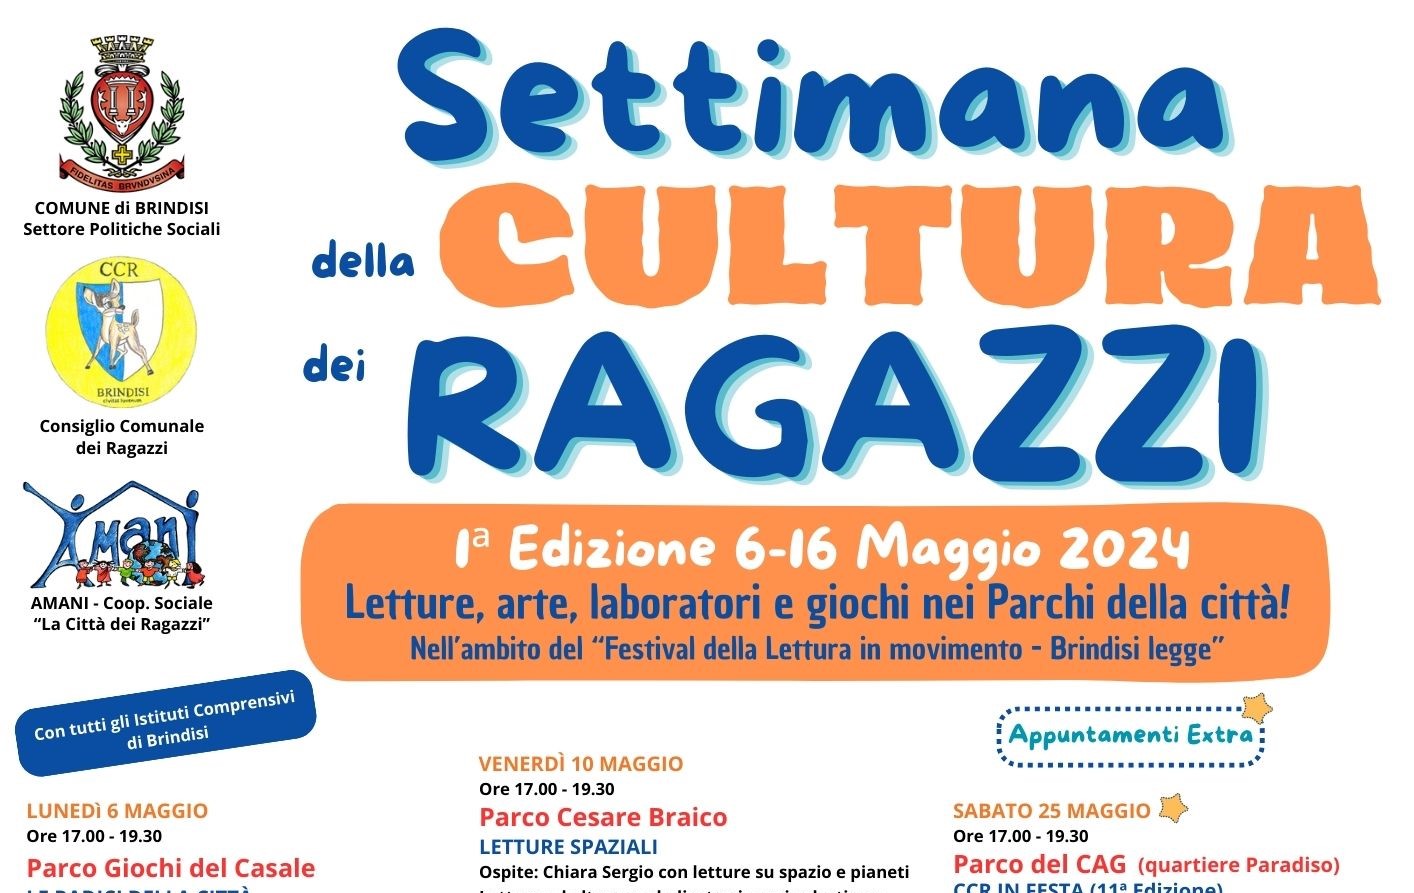 Brindisi: Settimana della Cultura dei Ragazzi. Prima Edizione